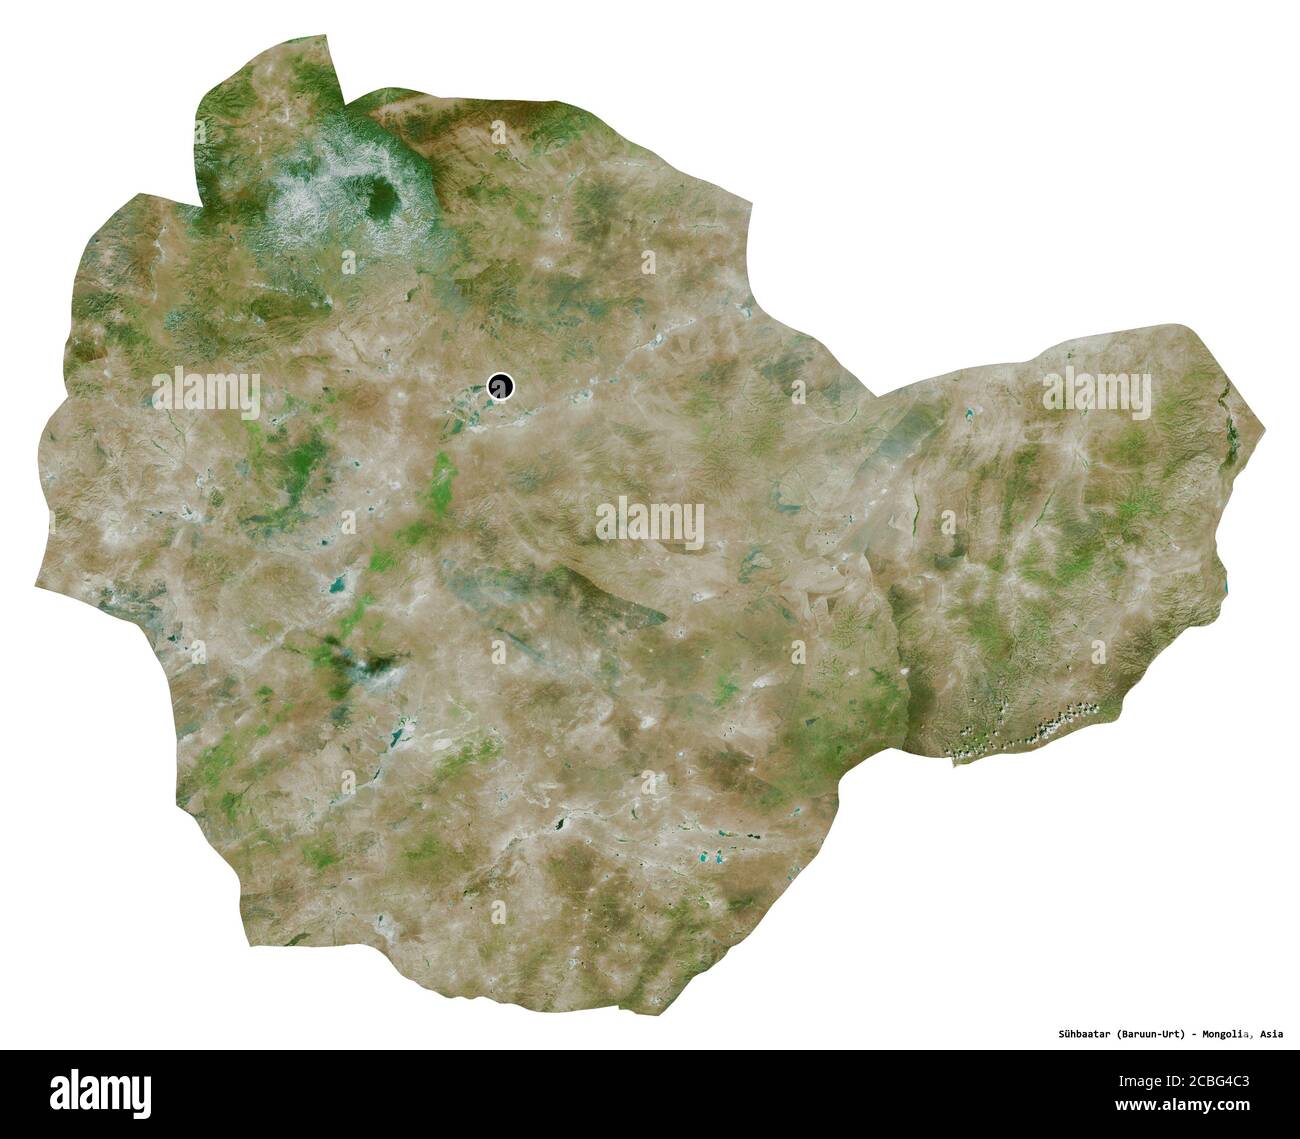 Forme de Sühbaatar, province de Mongolie, avec sa capitale isolée sur fond blanc. Imagerie satellite. Rendu 3D Banque D'Images